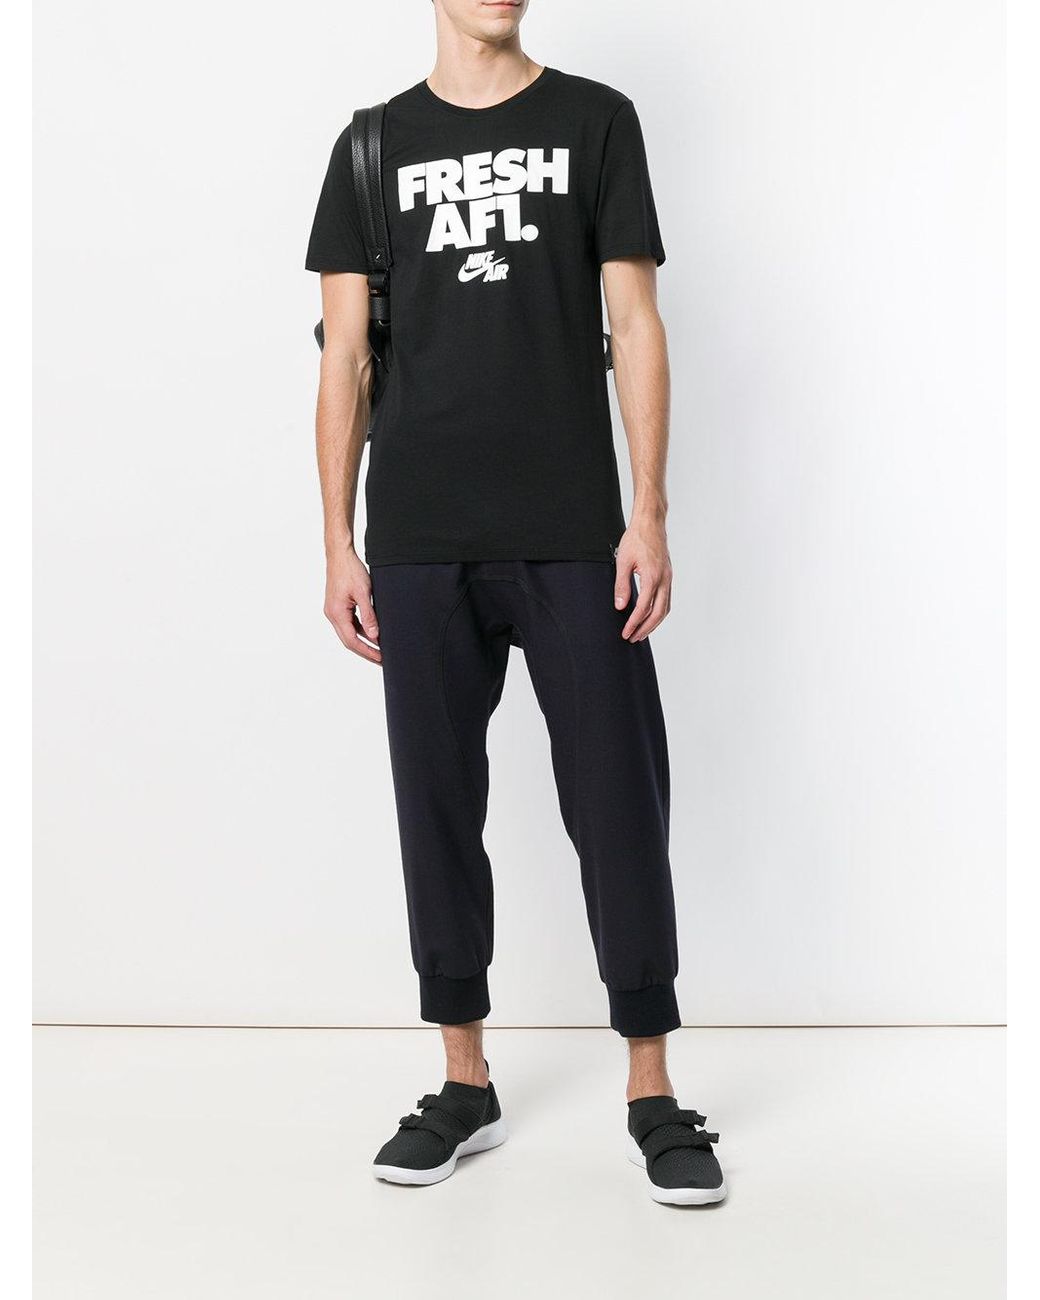 Nike Fresh Af1 T-shirt in Black for Men | Lyst